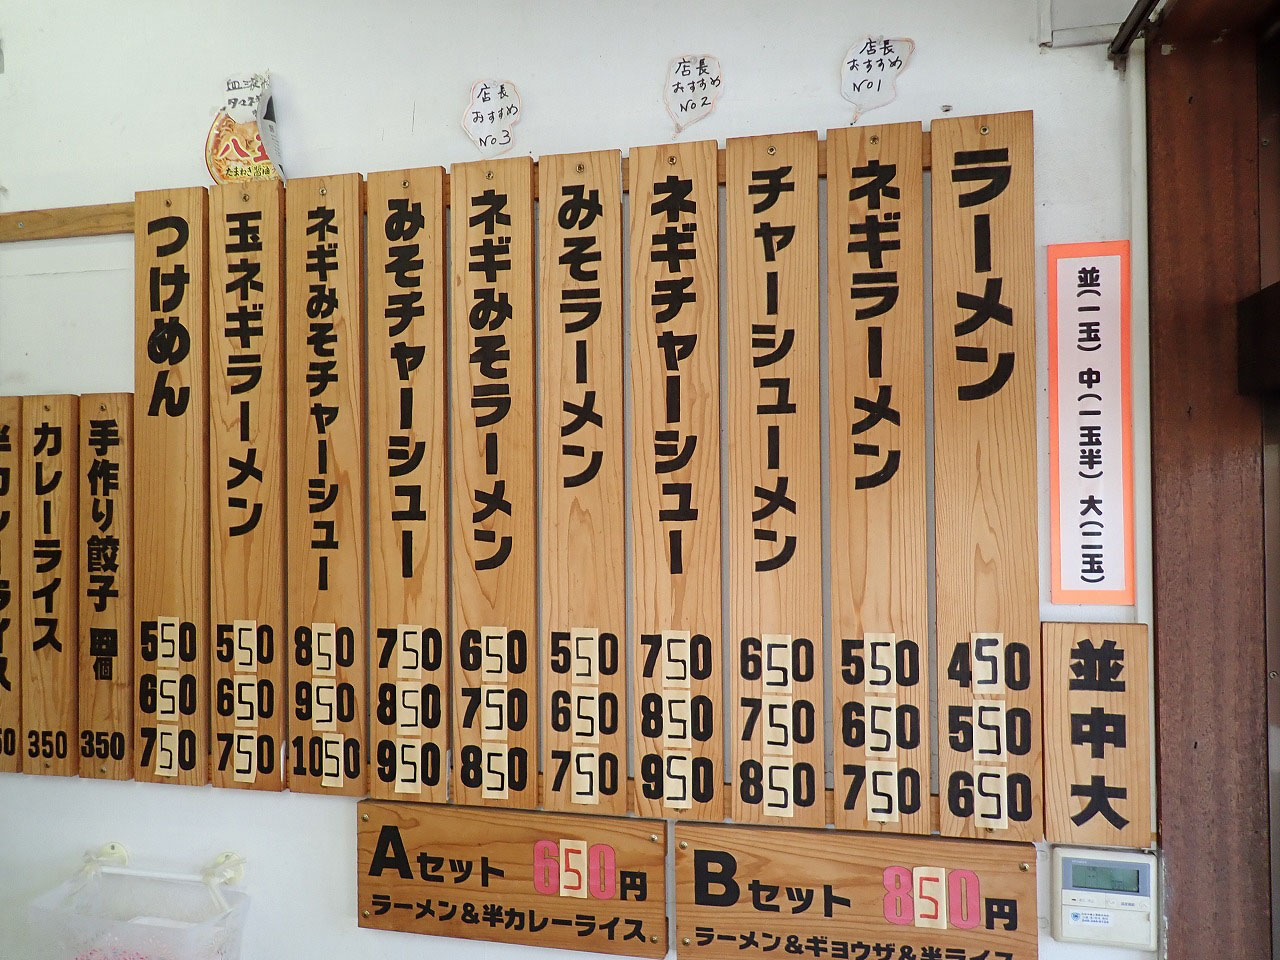 川越の美味しいラーメン店『ラーメンショップ ヤマナカ』